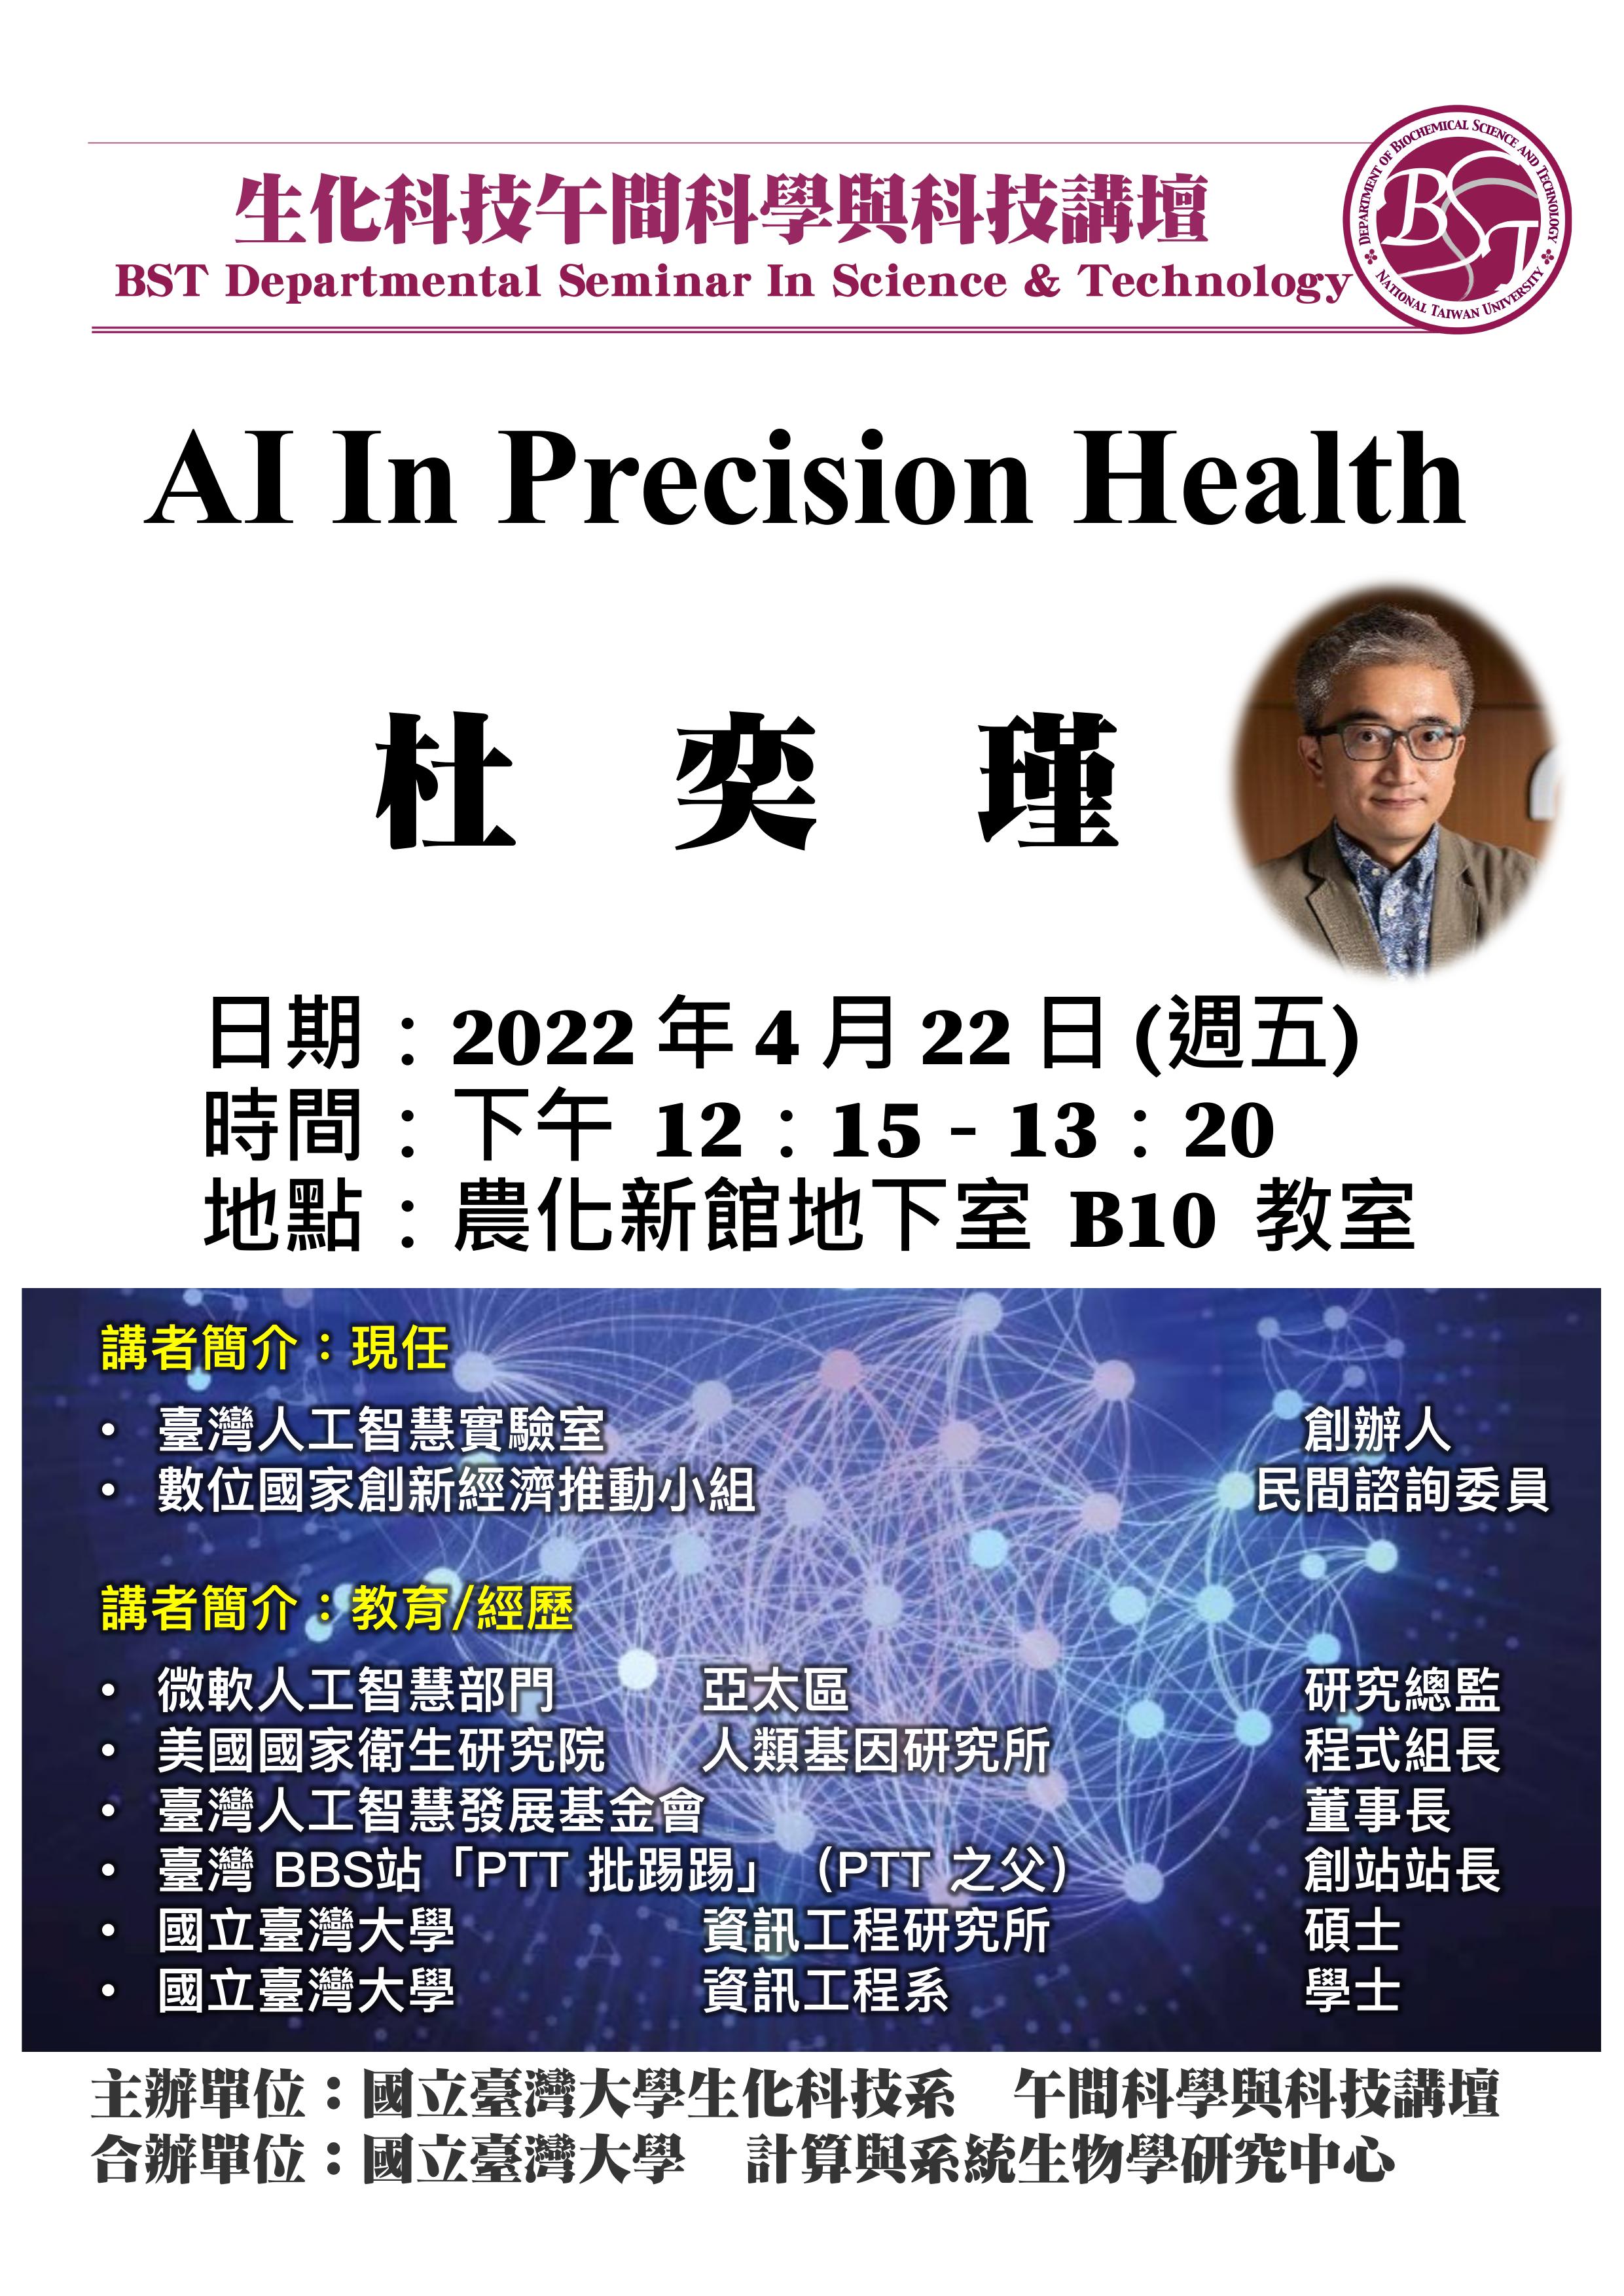 【午間科學與科技講壇】(4/22/2022，週五) 杜奕瑾(PTT創立人) -「AI in precision health」